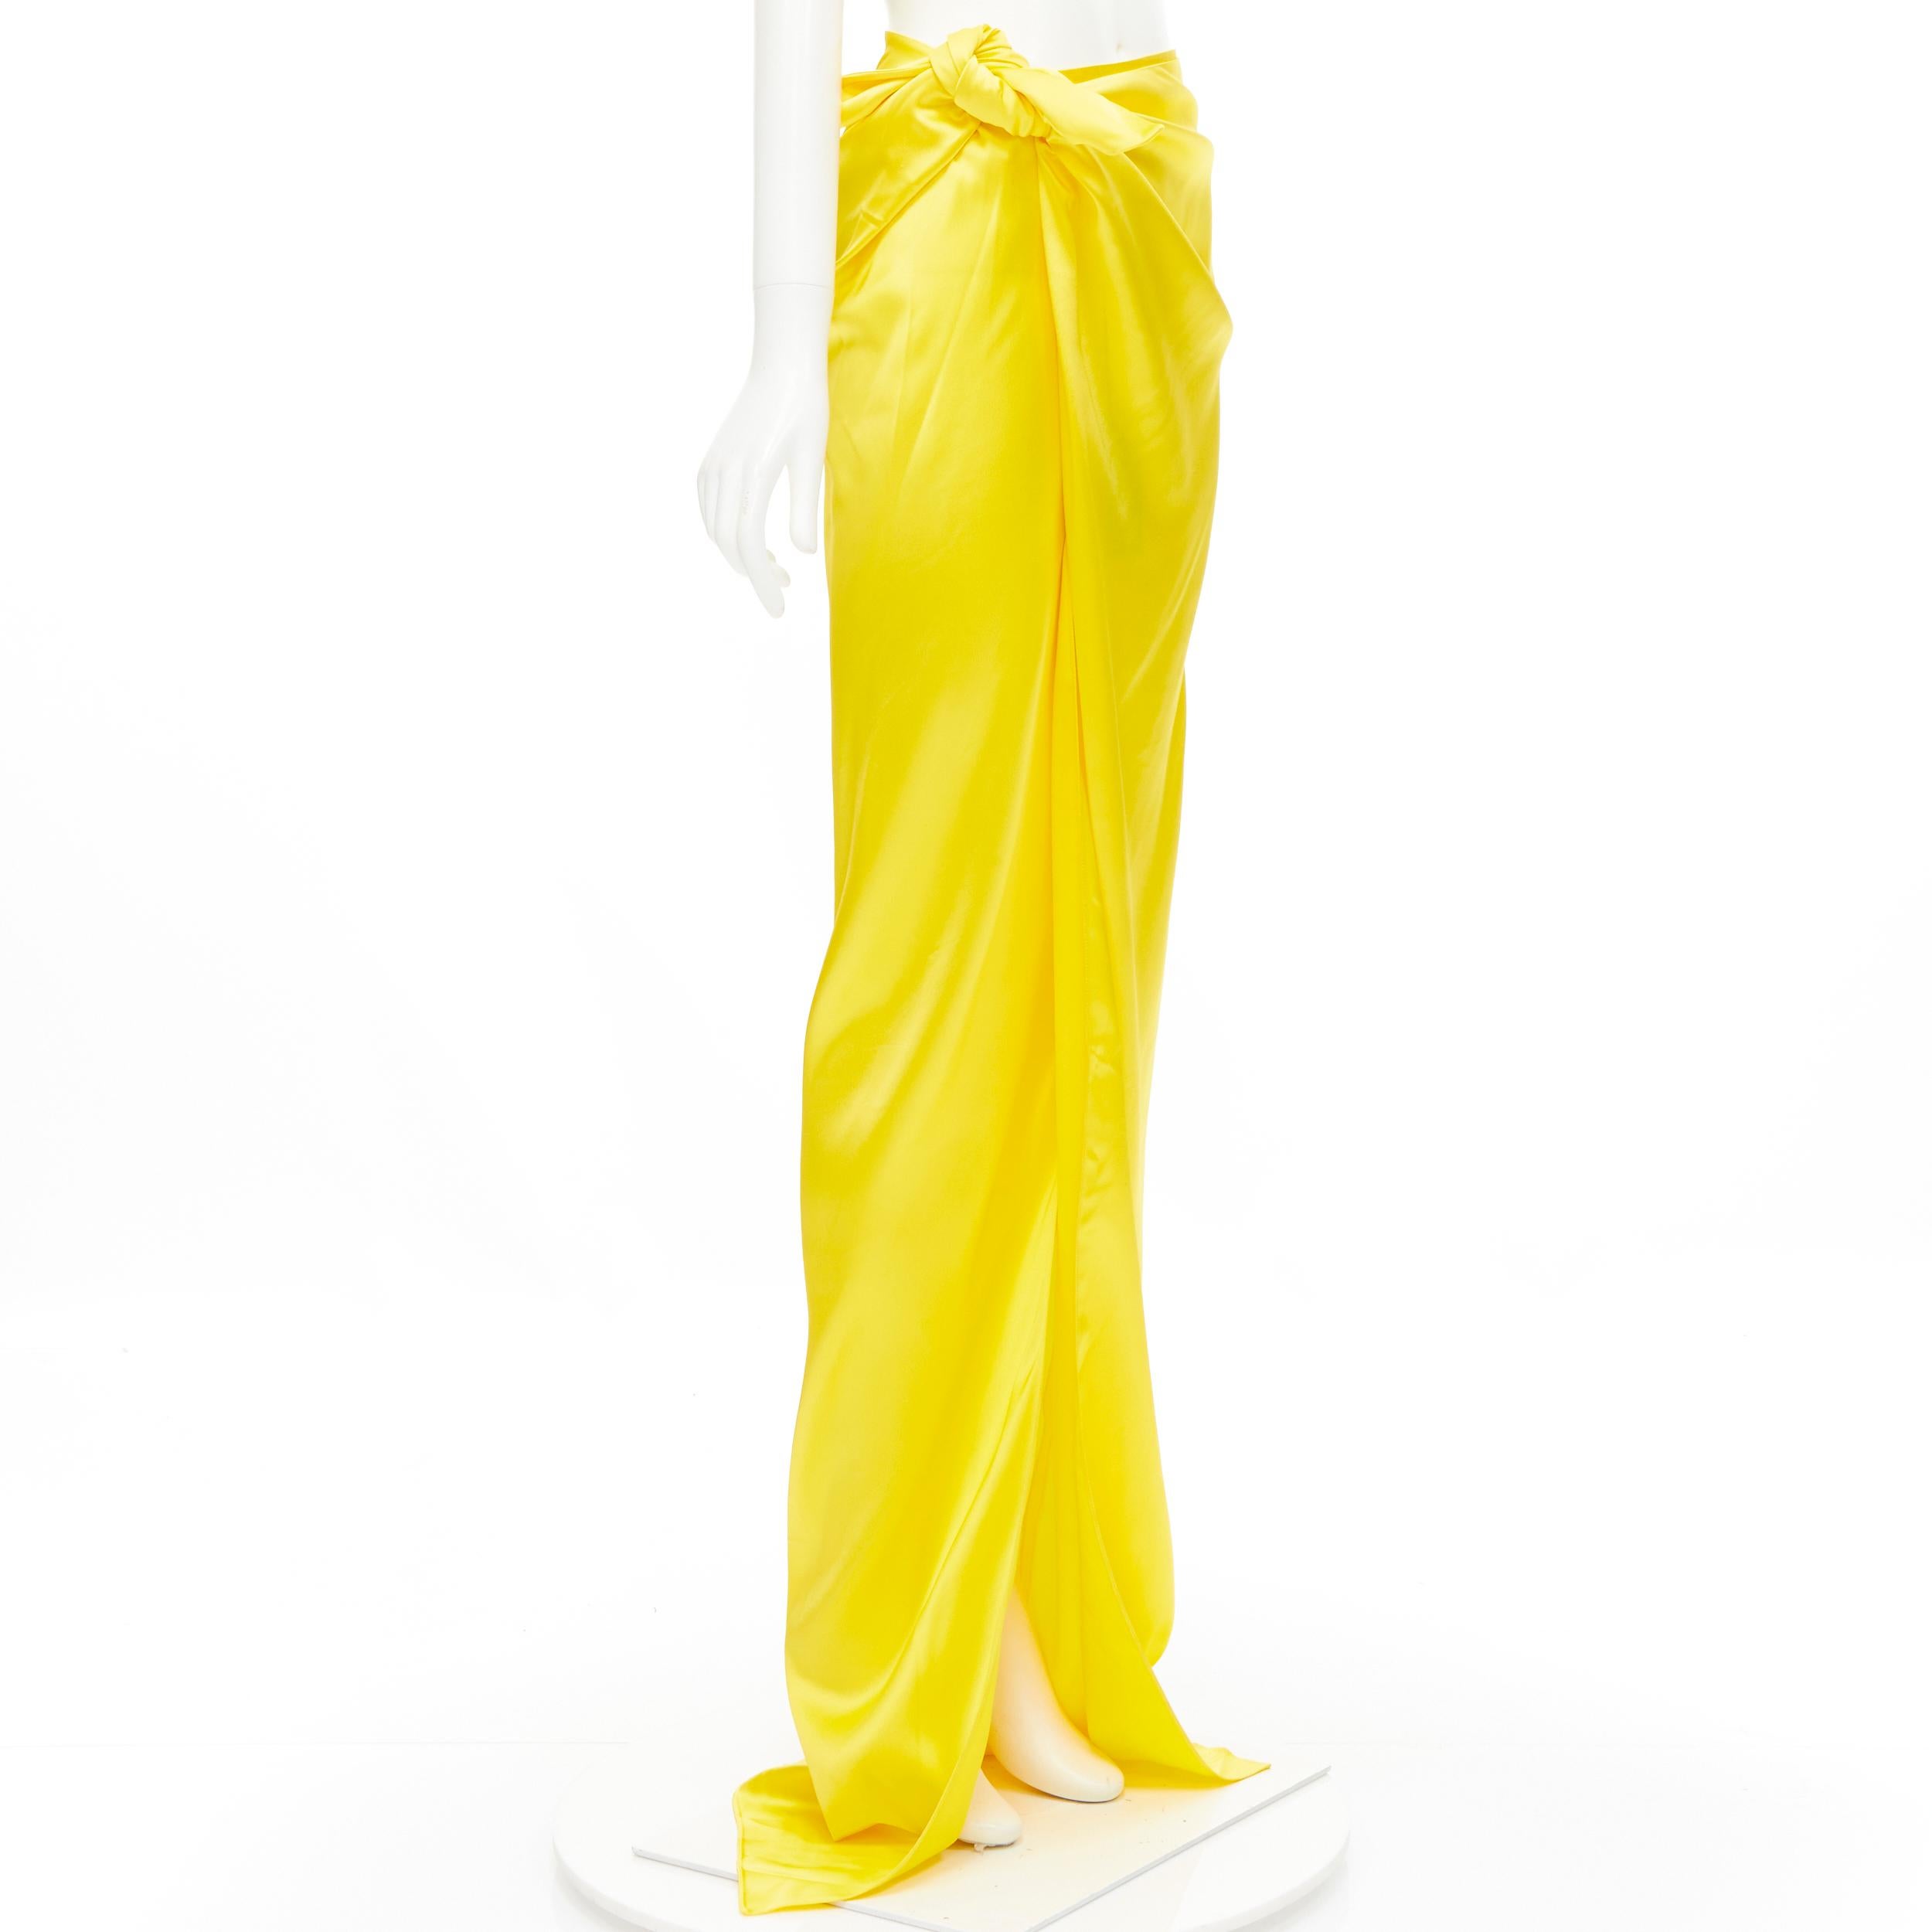 yellow satin maxi skirt